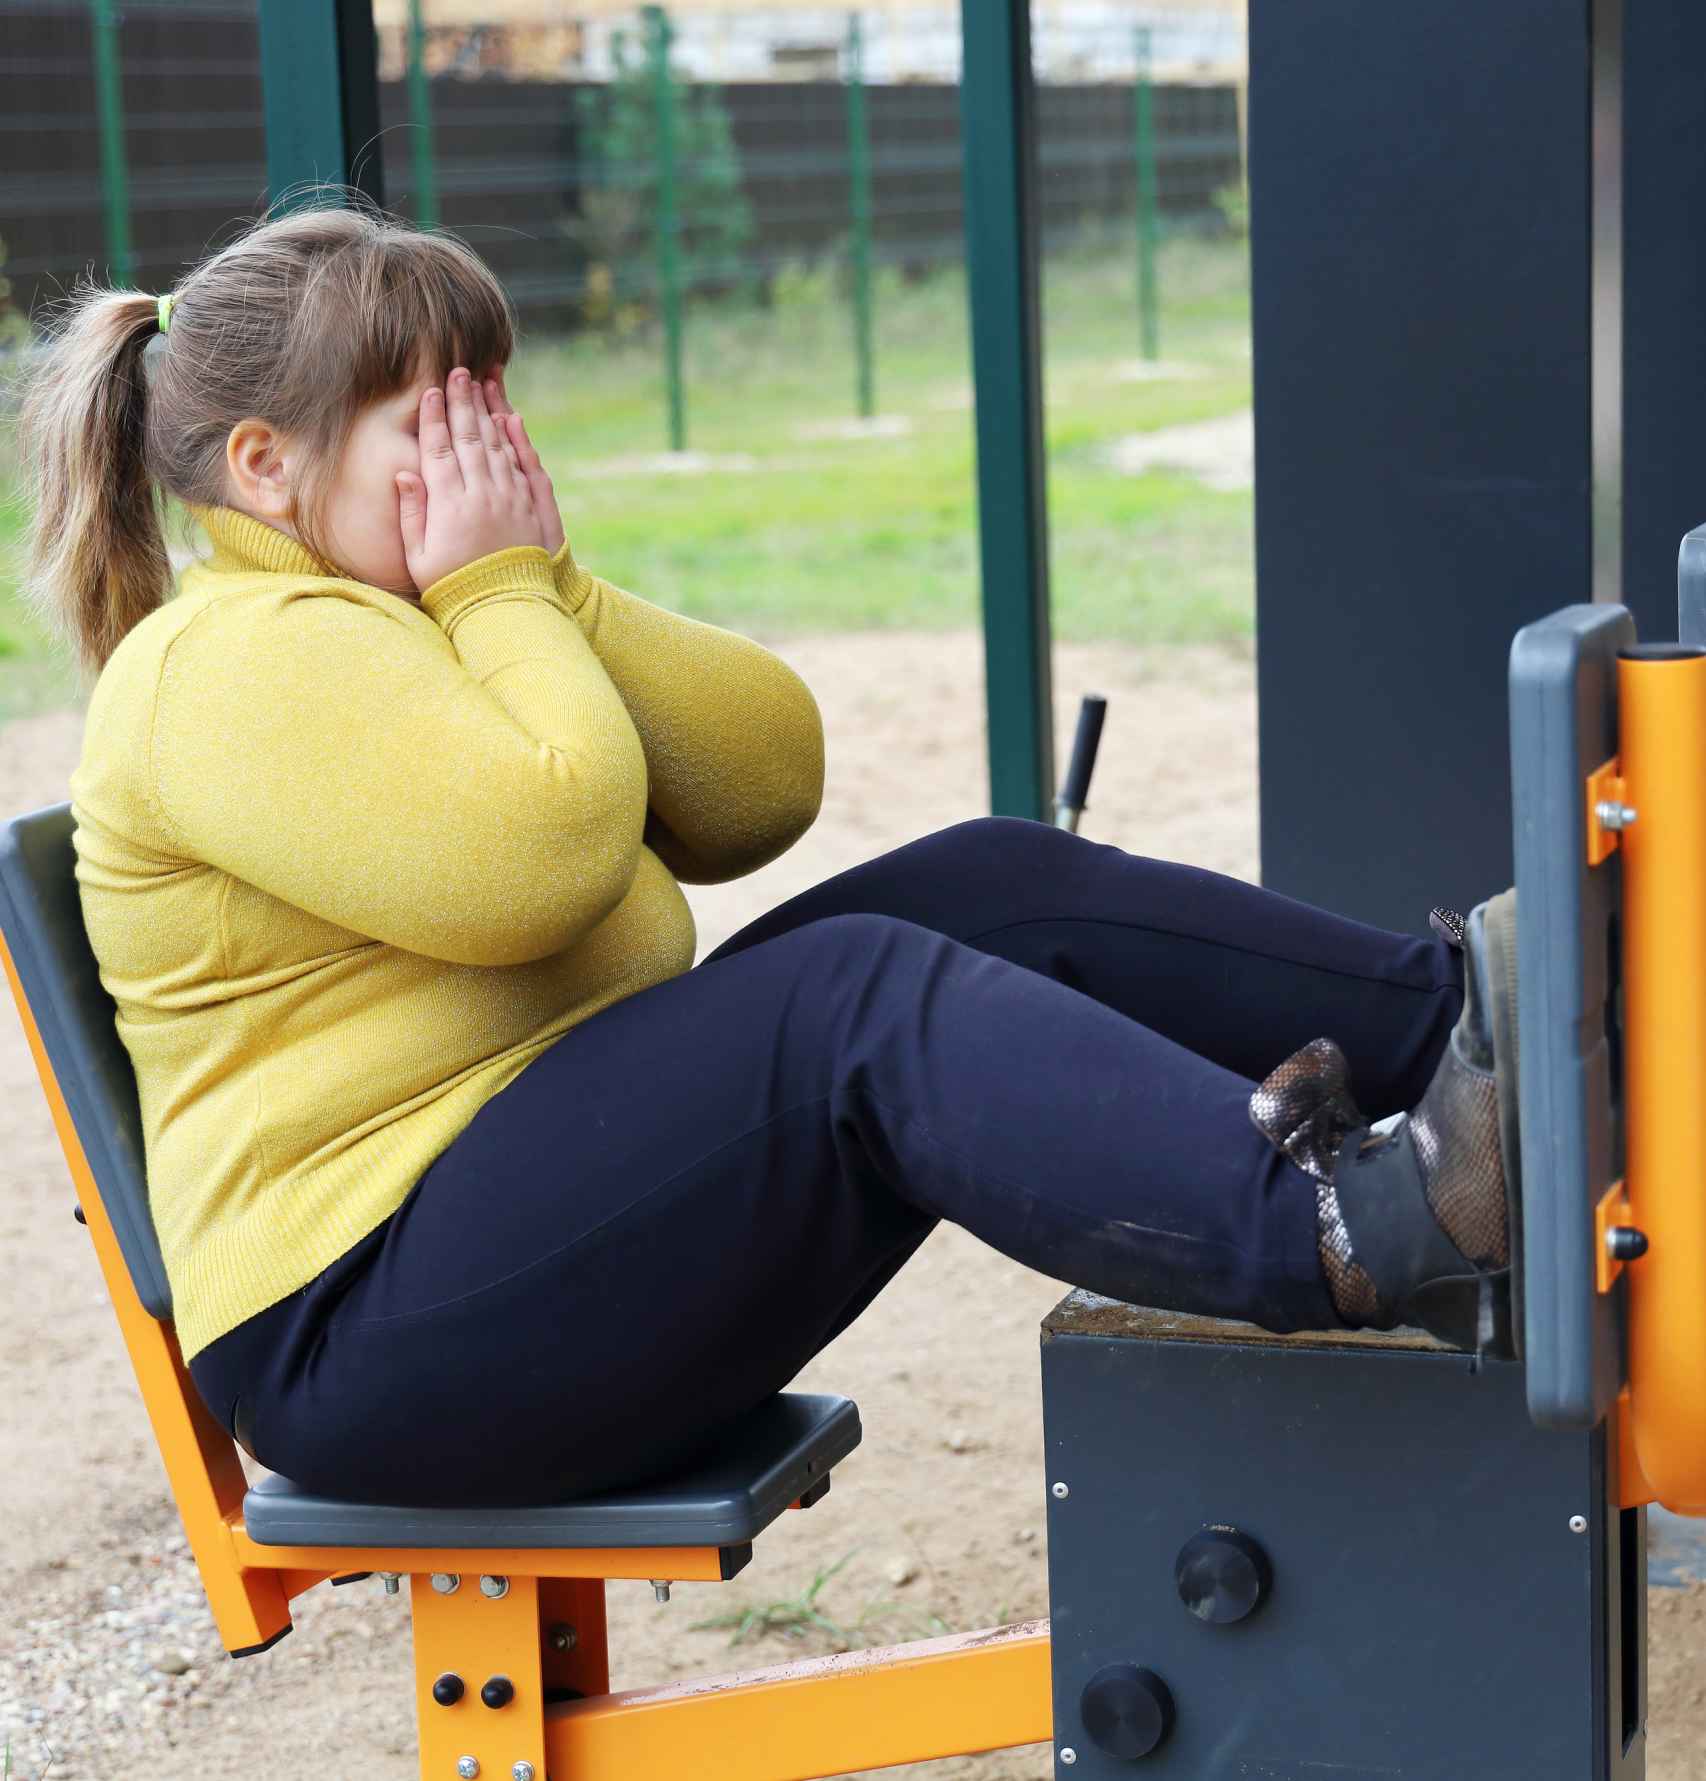 Una niña con sobrepeso, haciendo ejercicio en el parque.